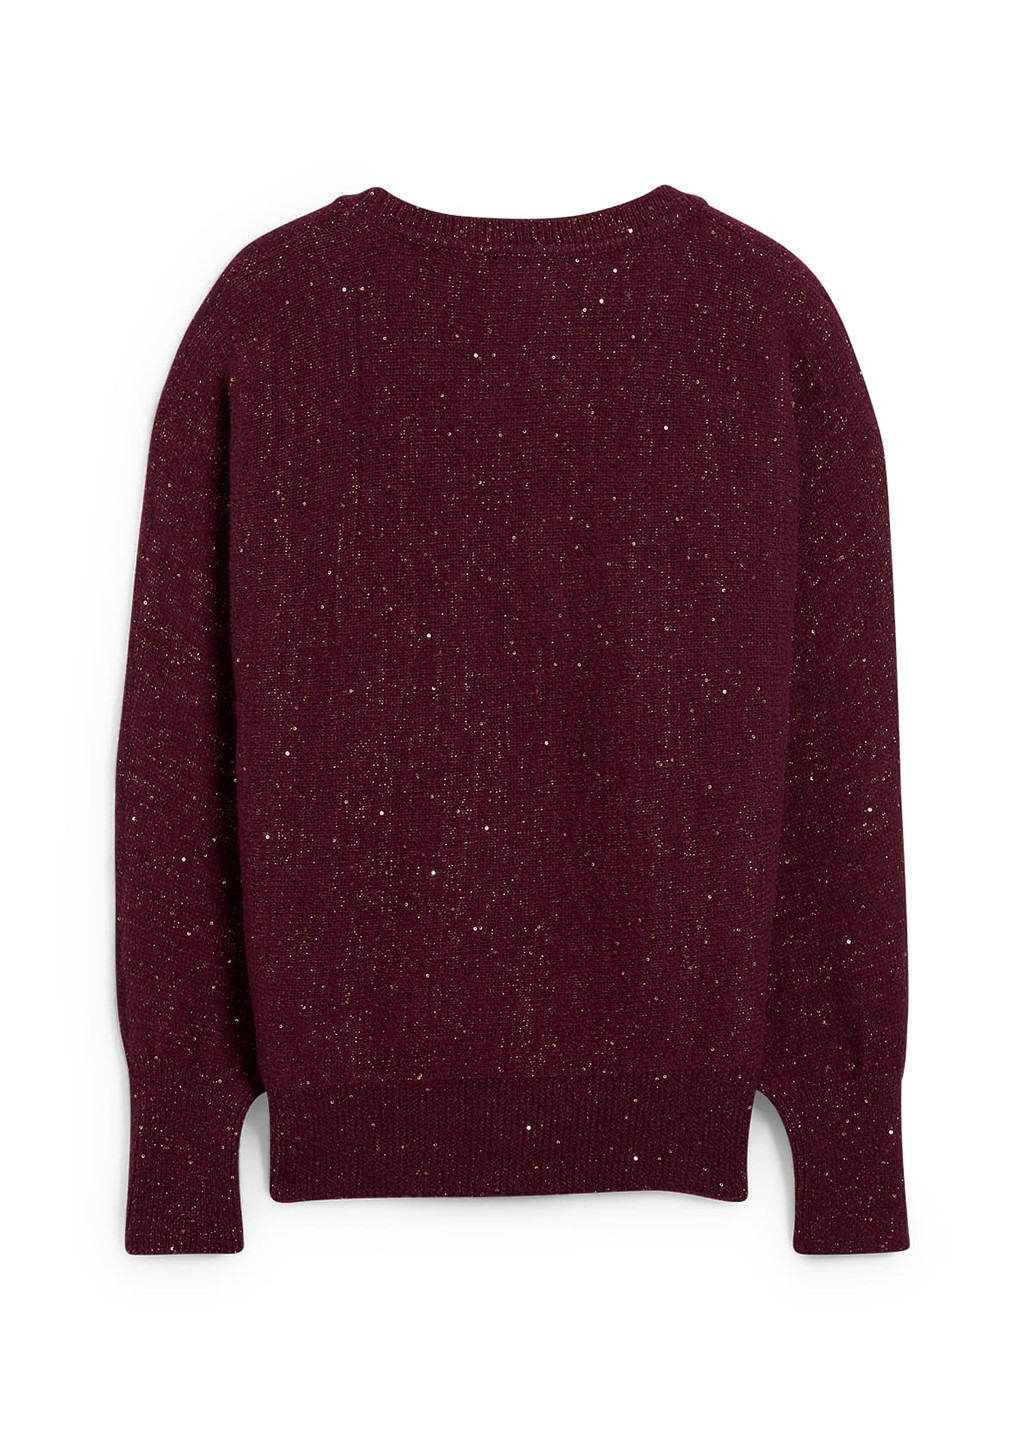 Бордовый демисезонный пуловер пуловер C&A